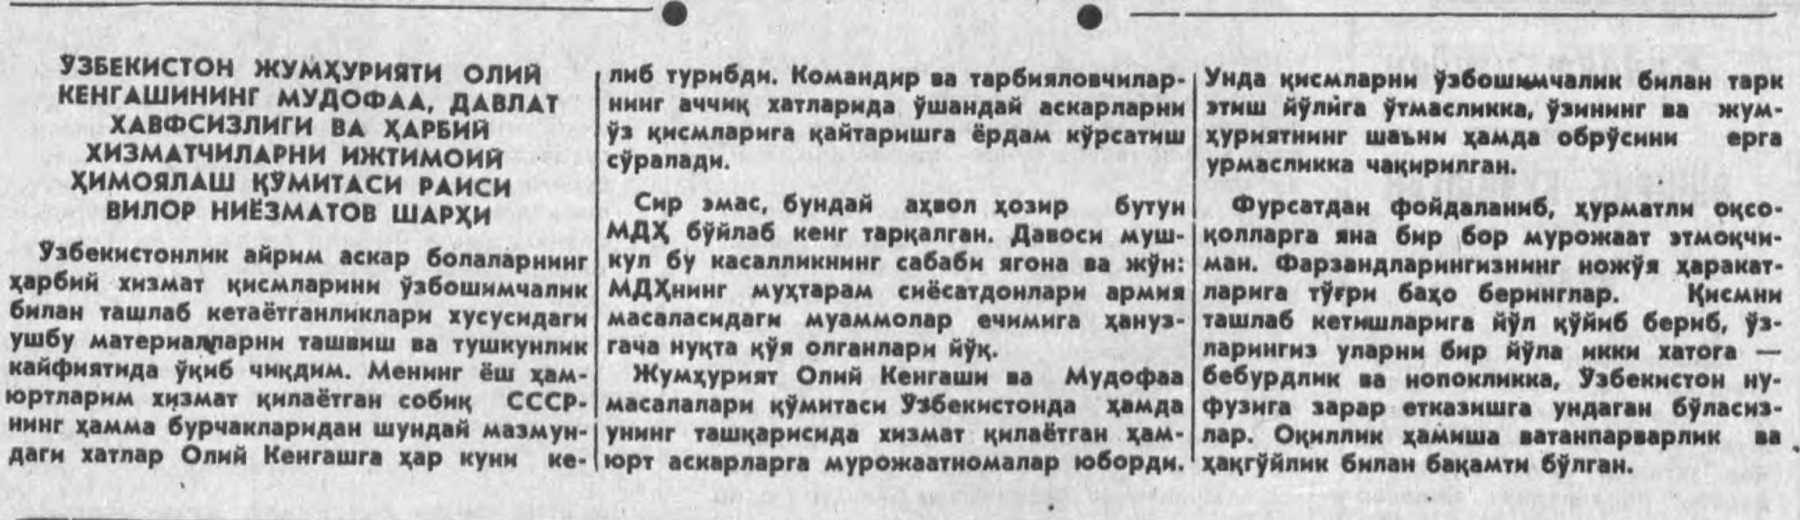 “Xalq so‘zi” gazetasining 1992-yil 14-may sonidan lavha